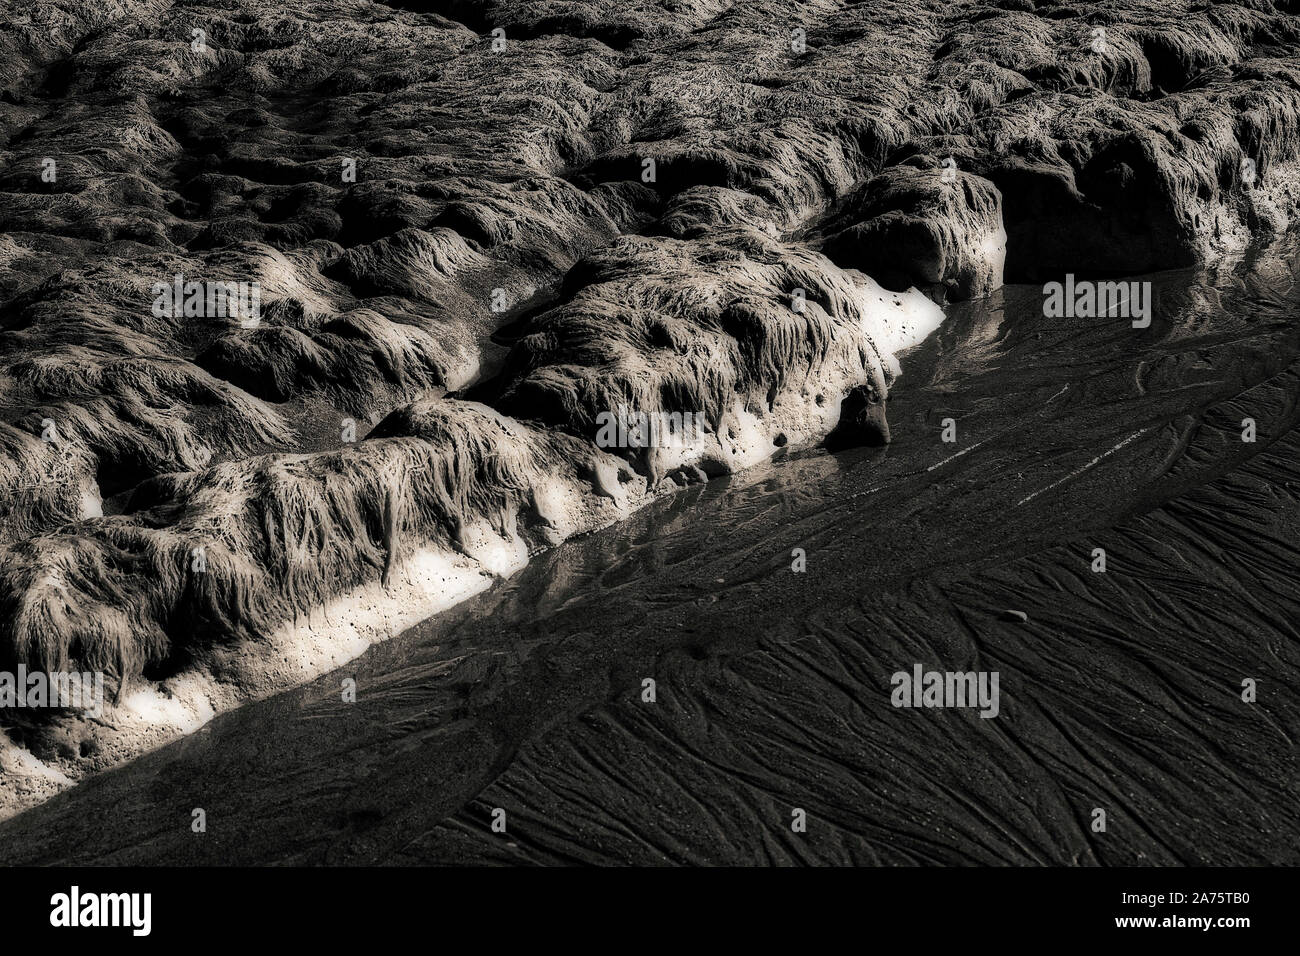 Image infrarouge - découverte des roches de craie surmontée d'algues à marée basse (près de dumpton gap) - resort de broadstairs - Île de Thanet - Kent - Angleterre - Royaume-Uni Banque D'Images